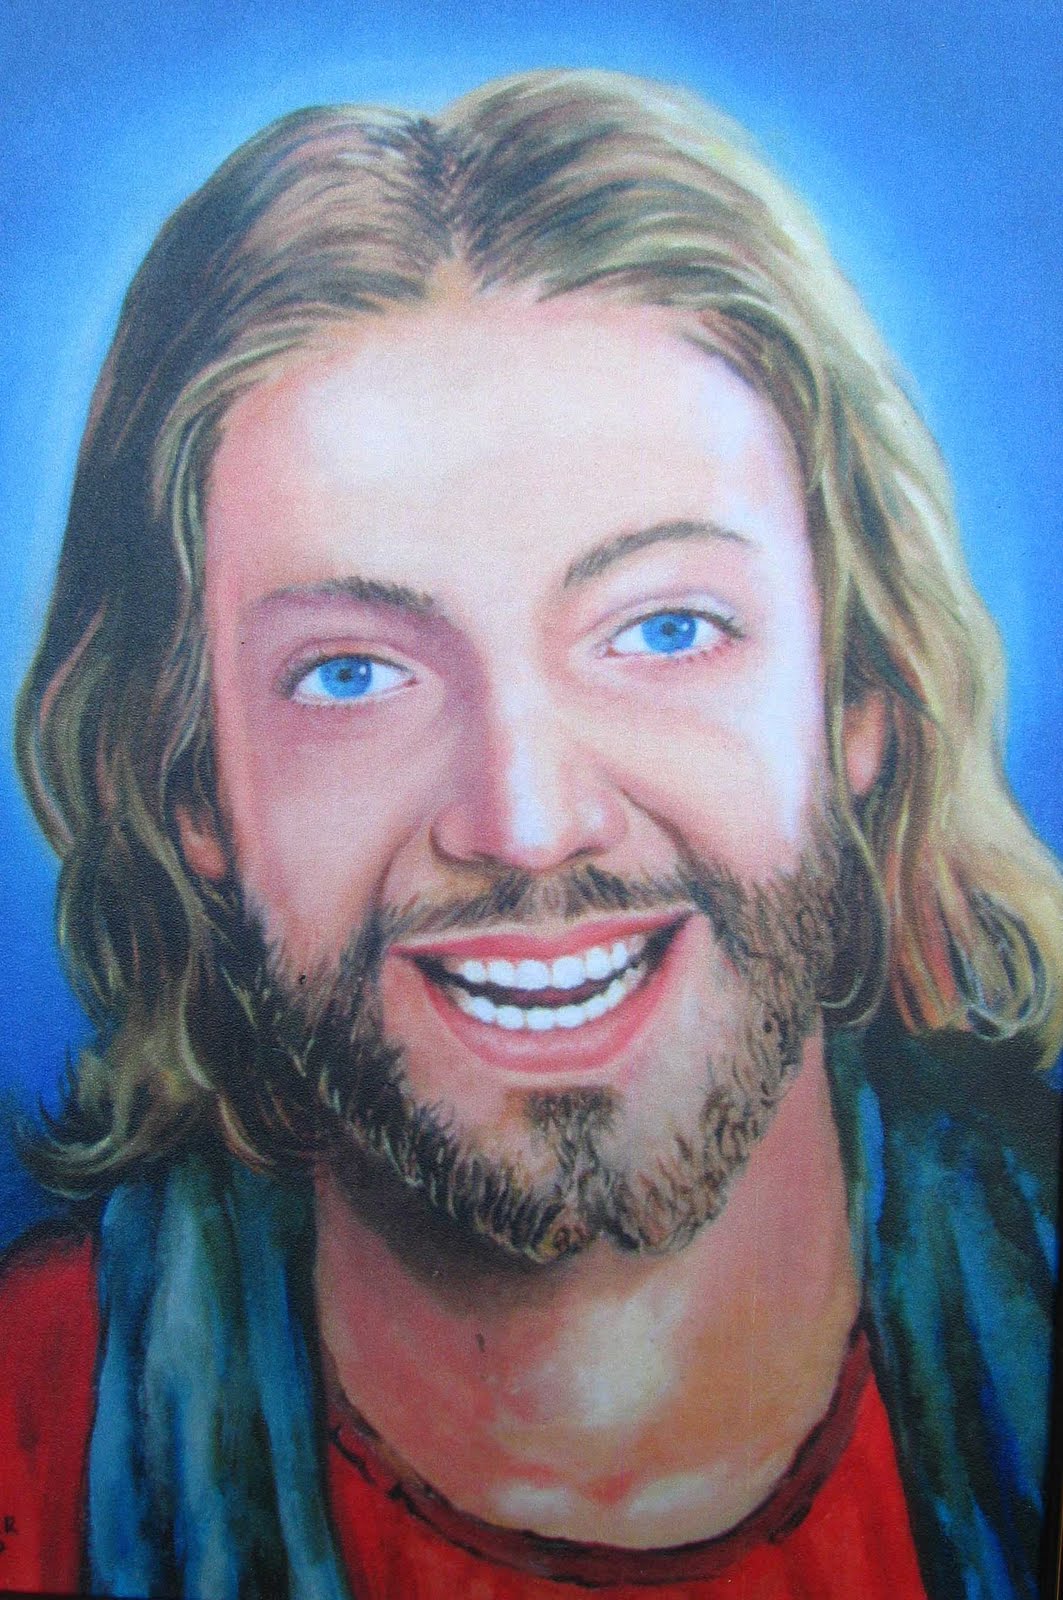 Jesus wallpaper, Jesus pictures, Jesus